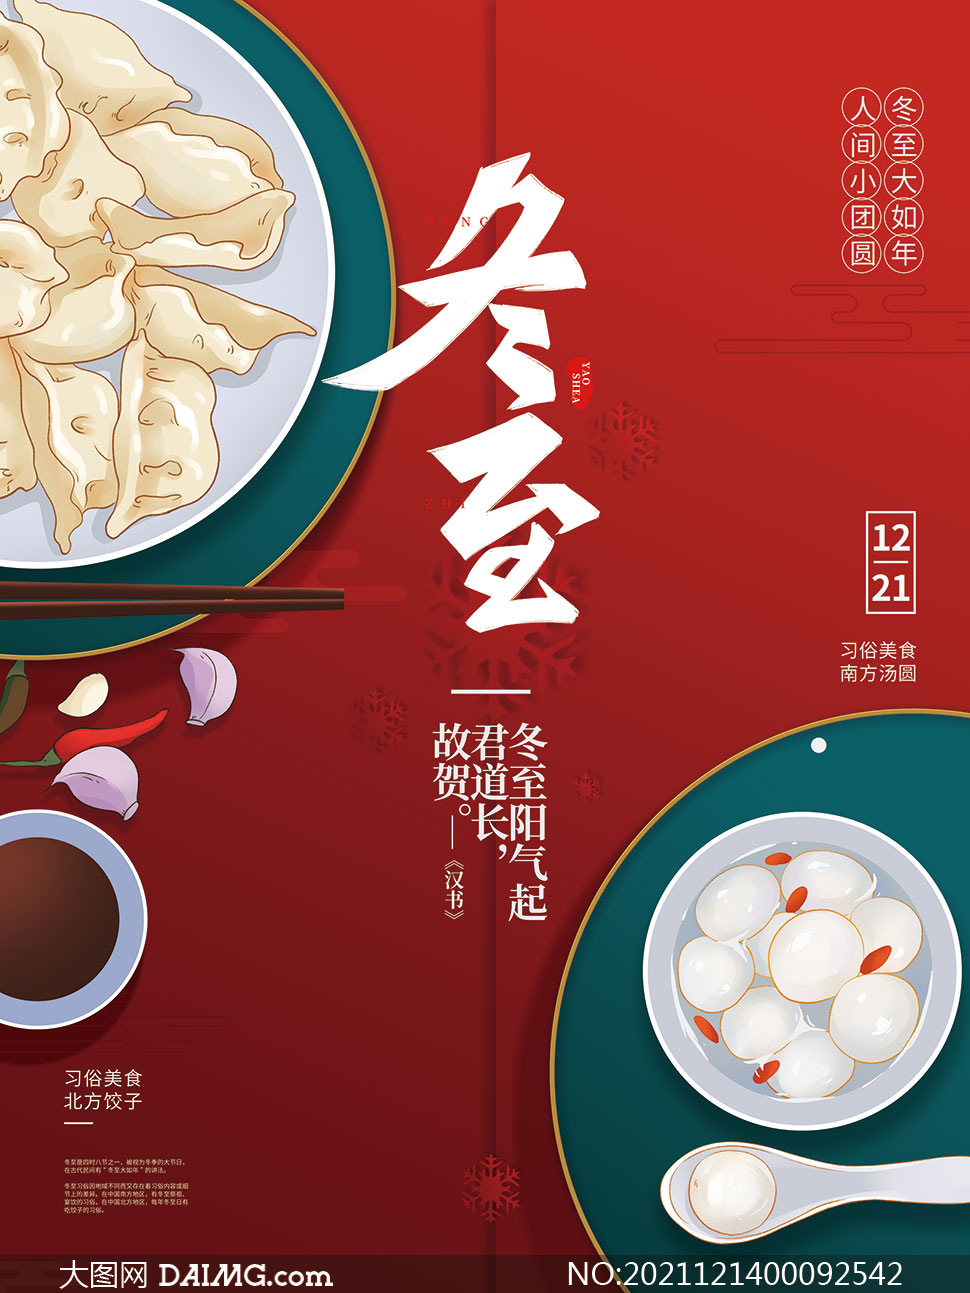 冬至吃汤圆吃饺子宣传海报设计psd素材